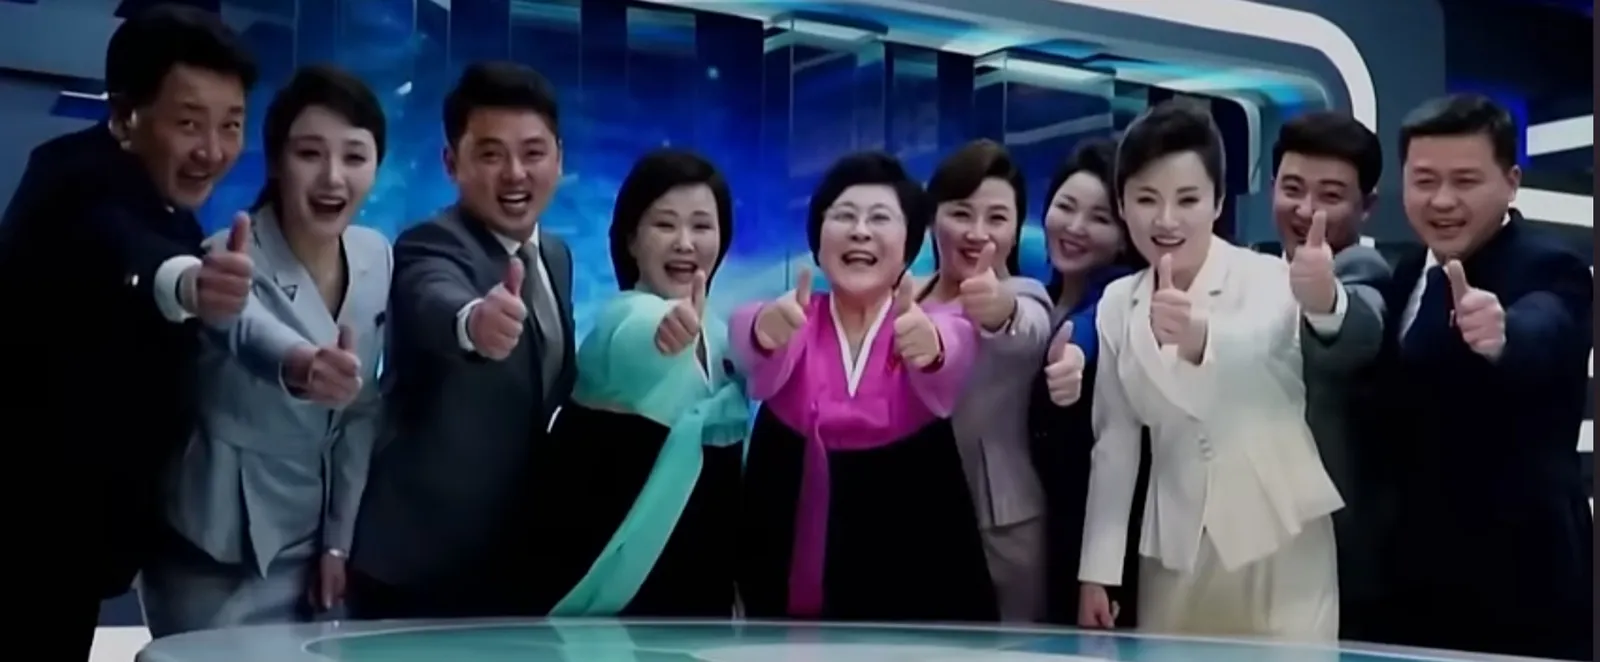 Pemimpin Korut Kim Jong-Un Rilis Lagu Berisikan Pujian Untuk Dirinya